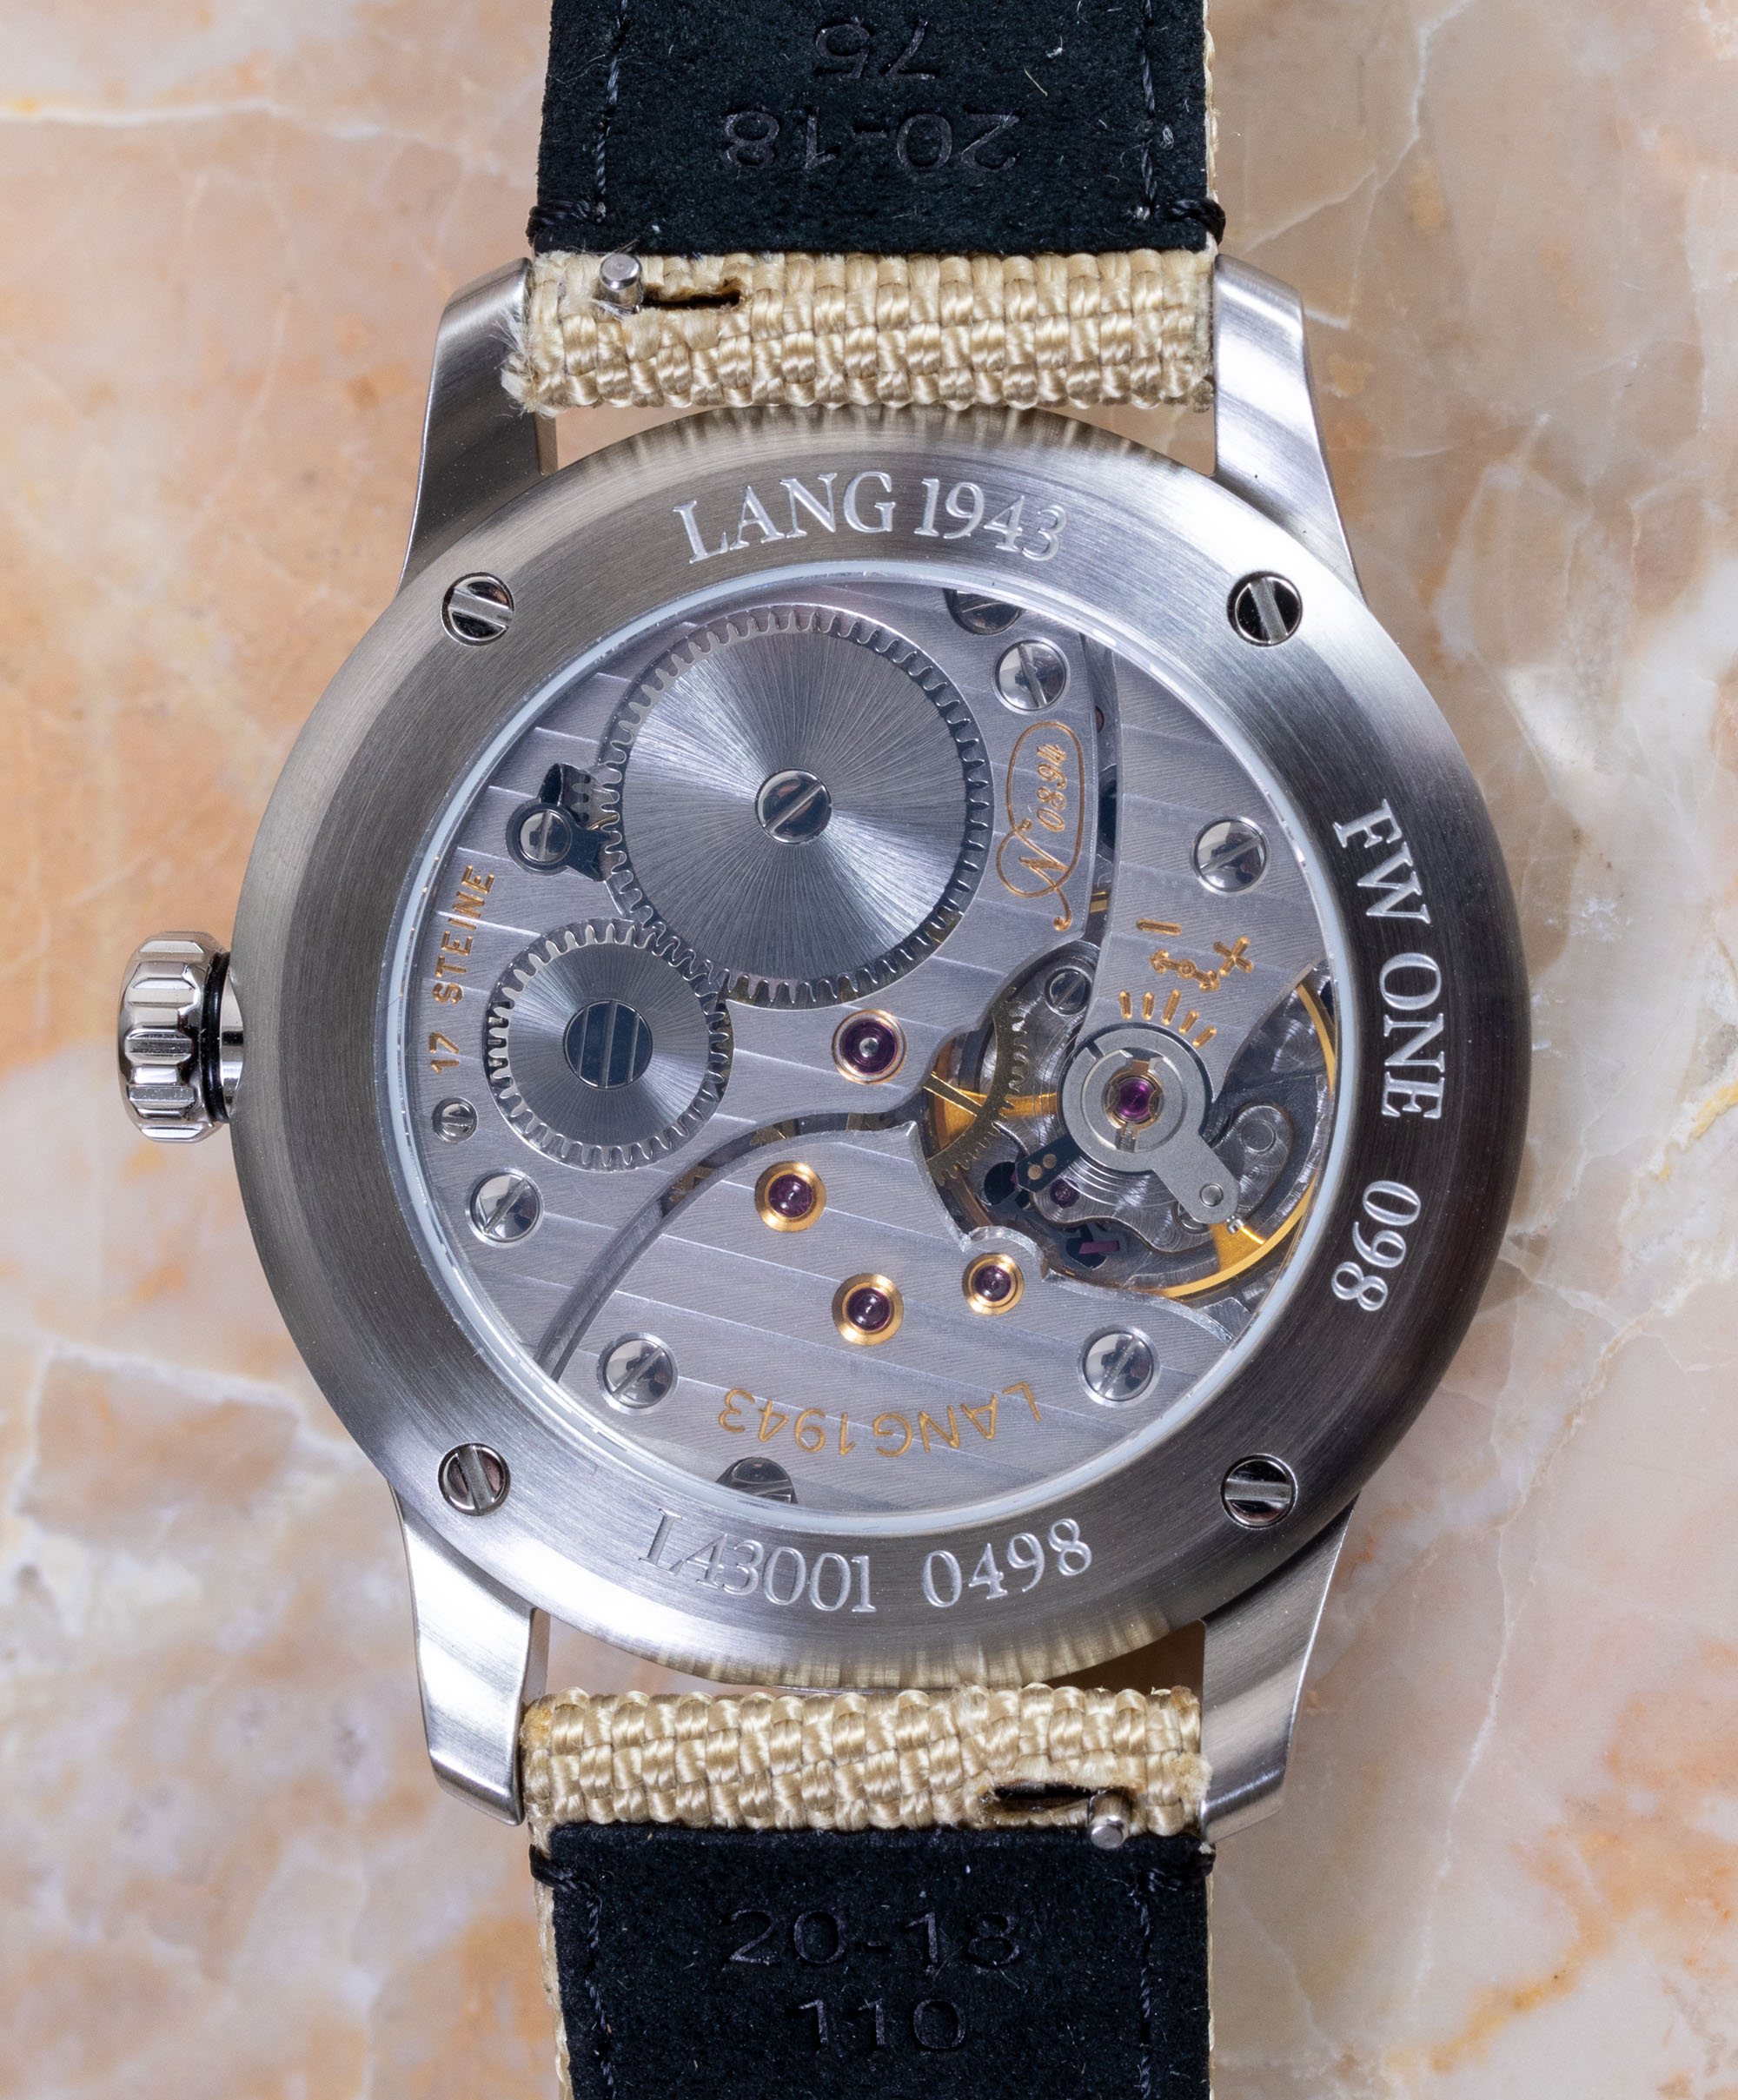 Обзор часов: Lang 1943 Edition One Watch